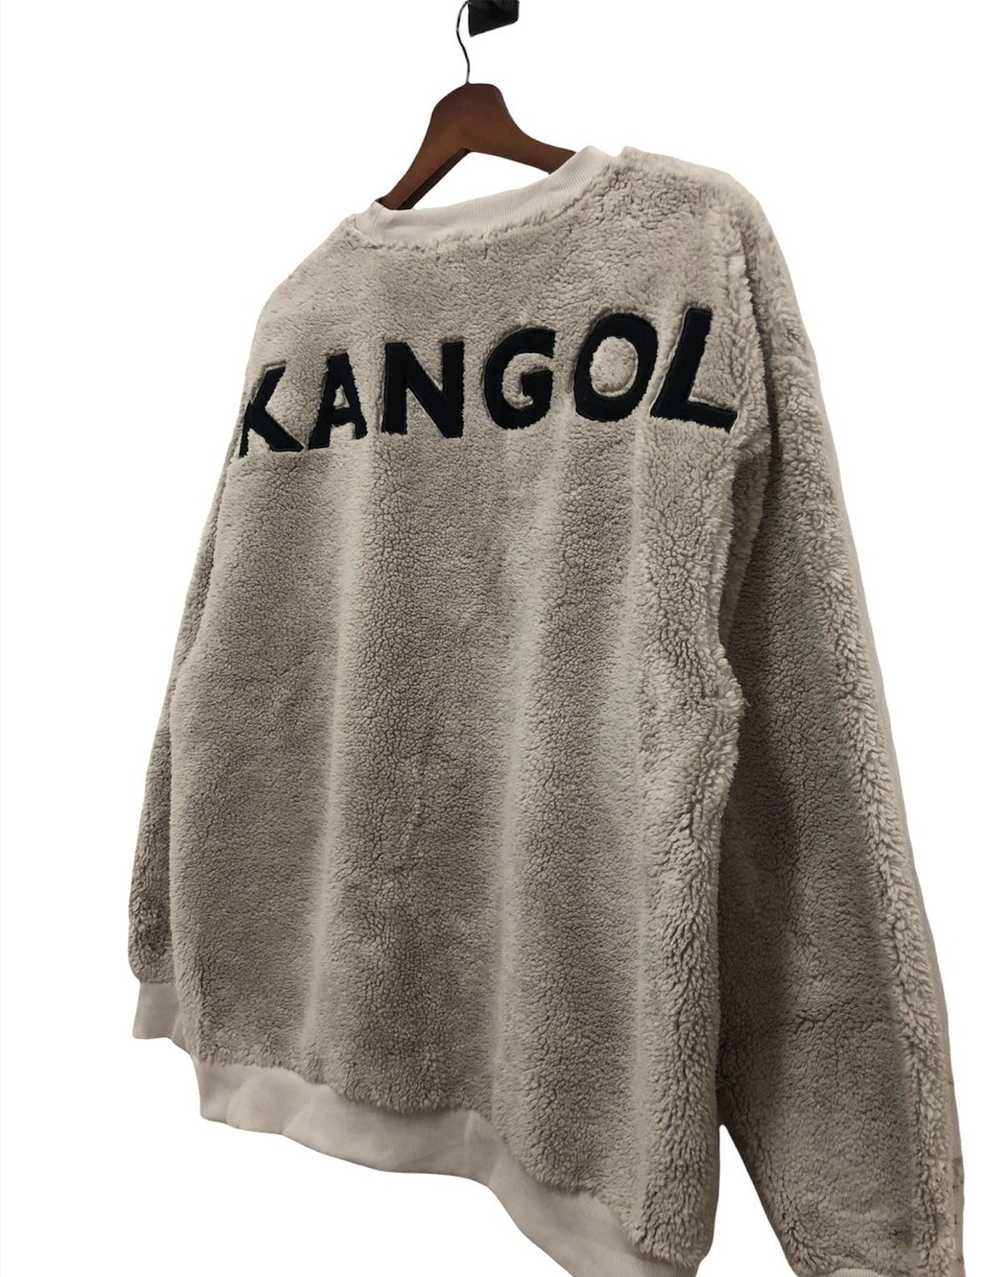 Kangol Kangol Oversized Fleece Sweatshirt - image 3